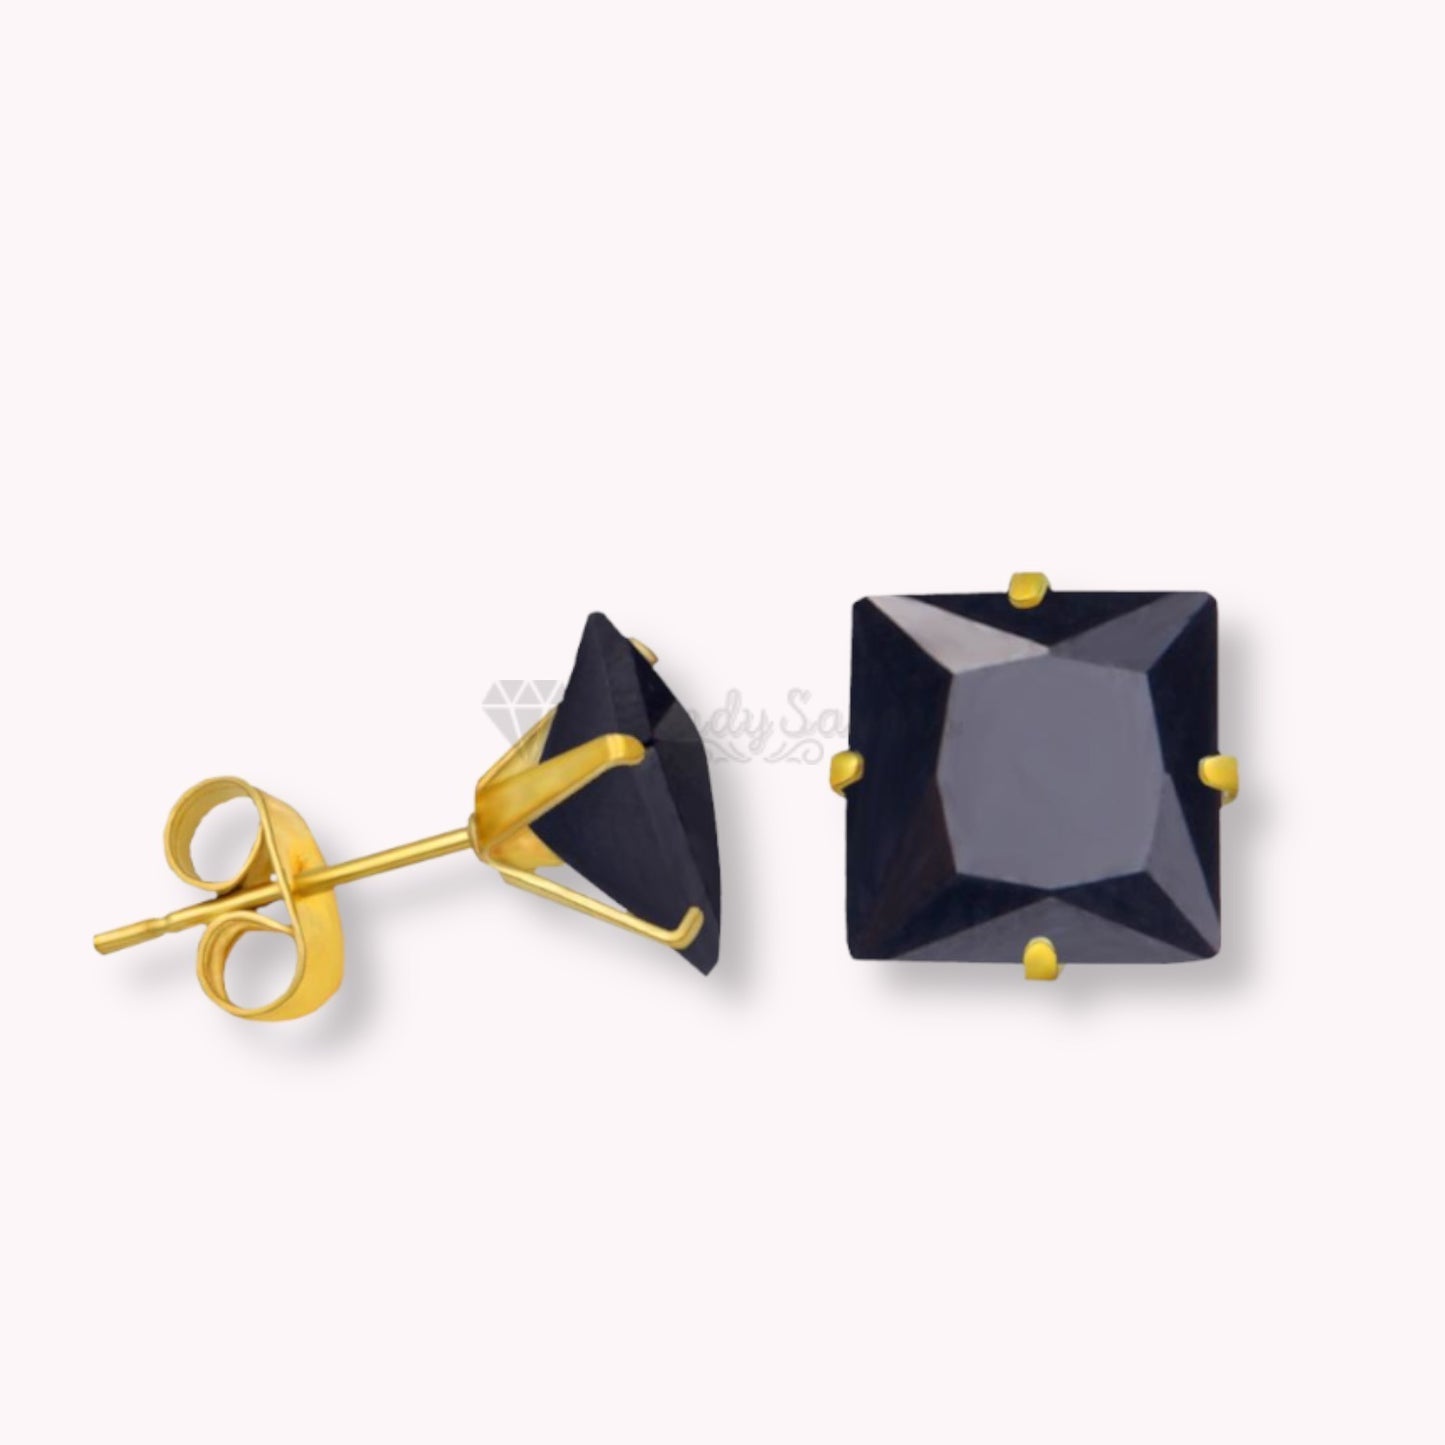 6MM Square Cut Black Cartilage Ear Stud Earrings Cubic Zirconia Women UK Jewelry